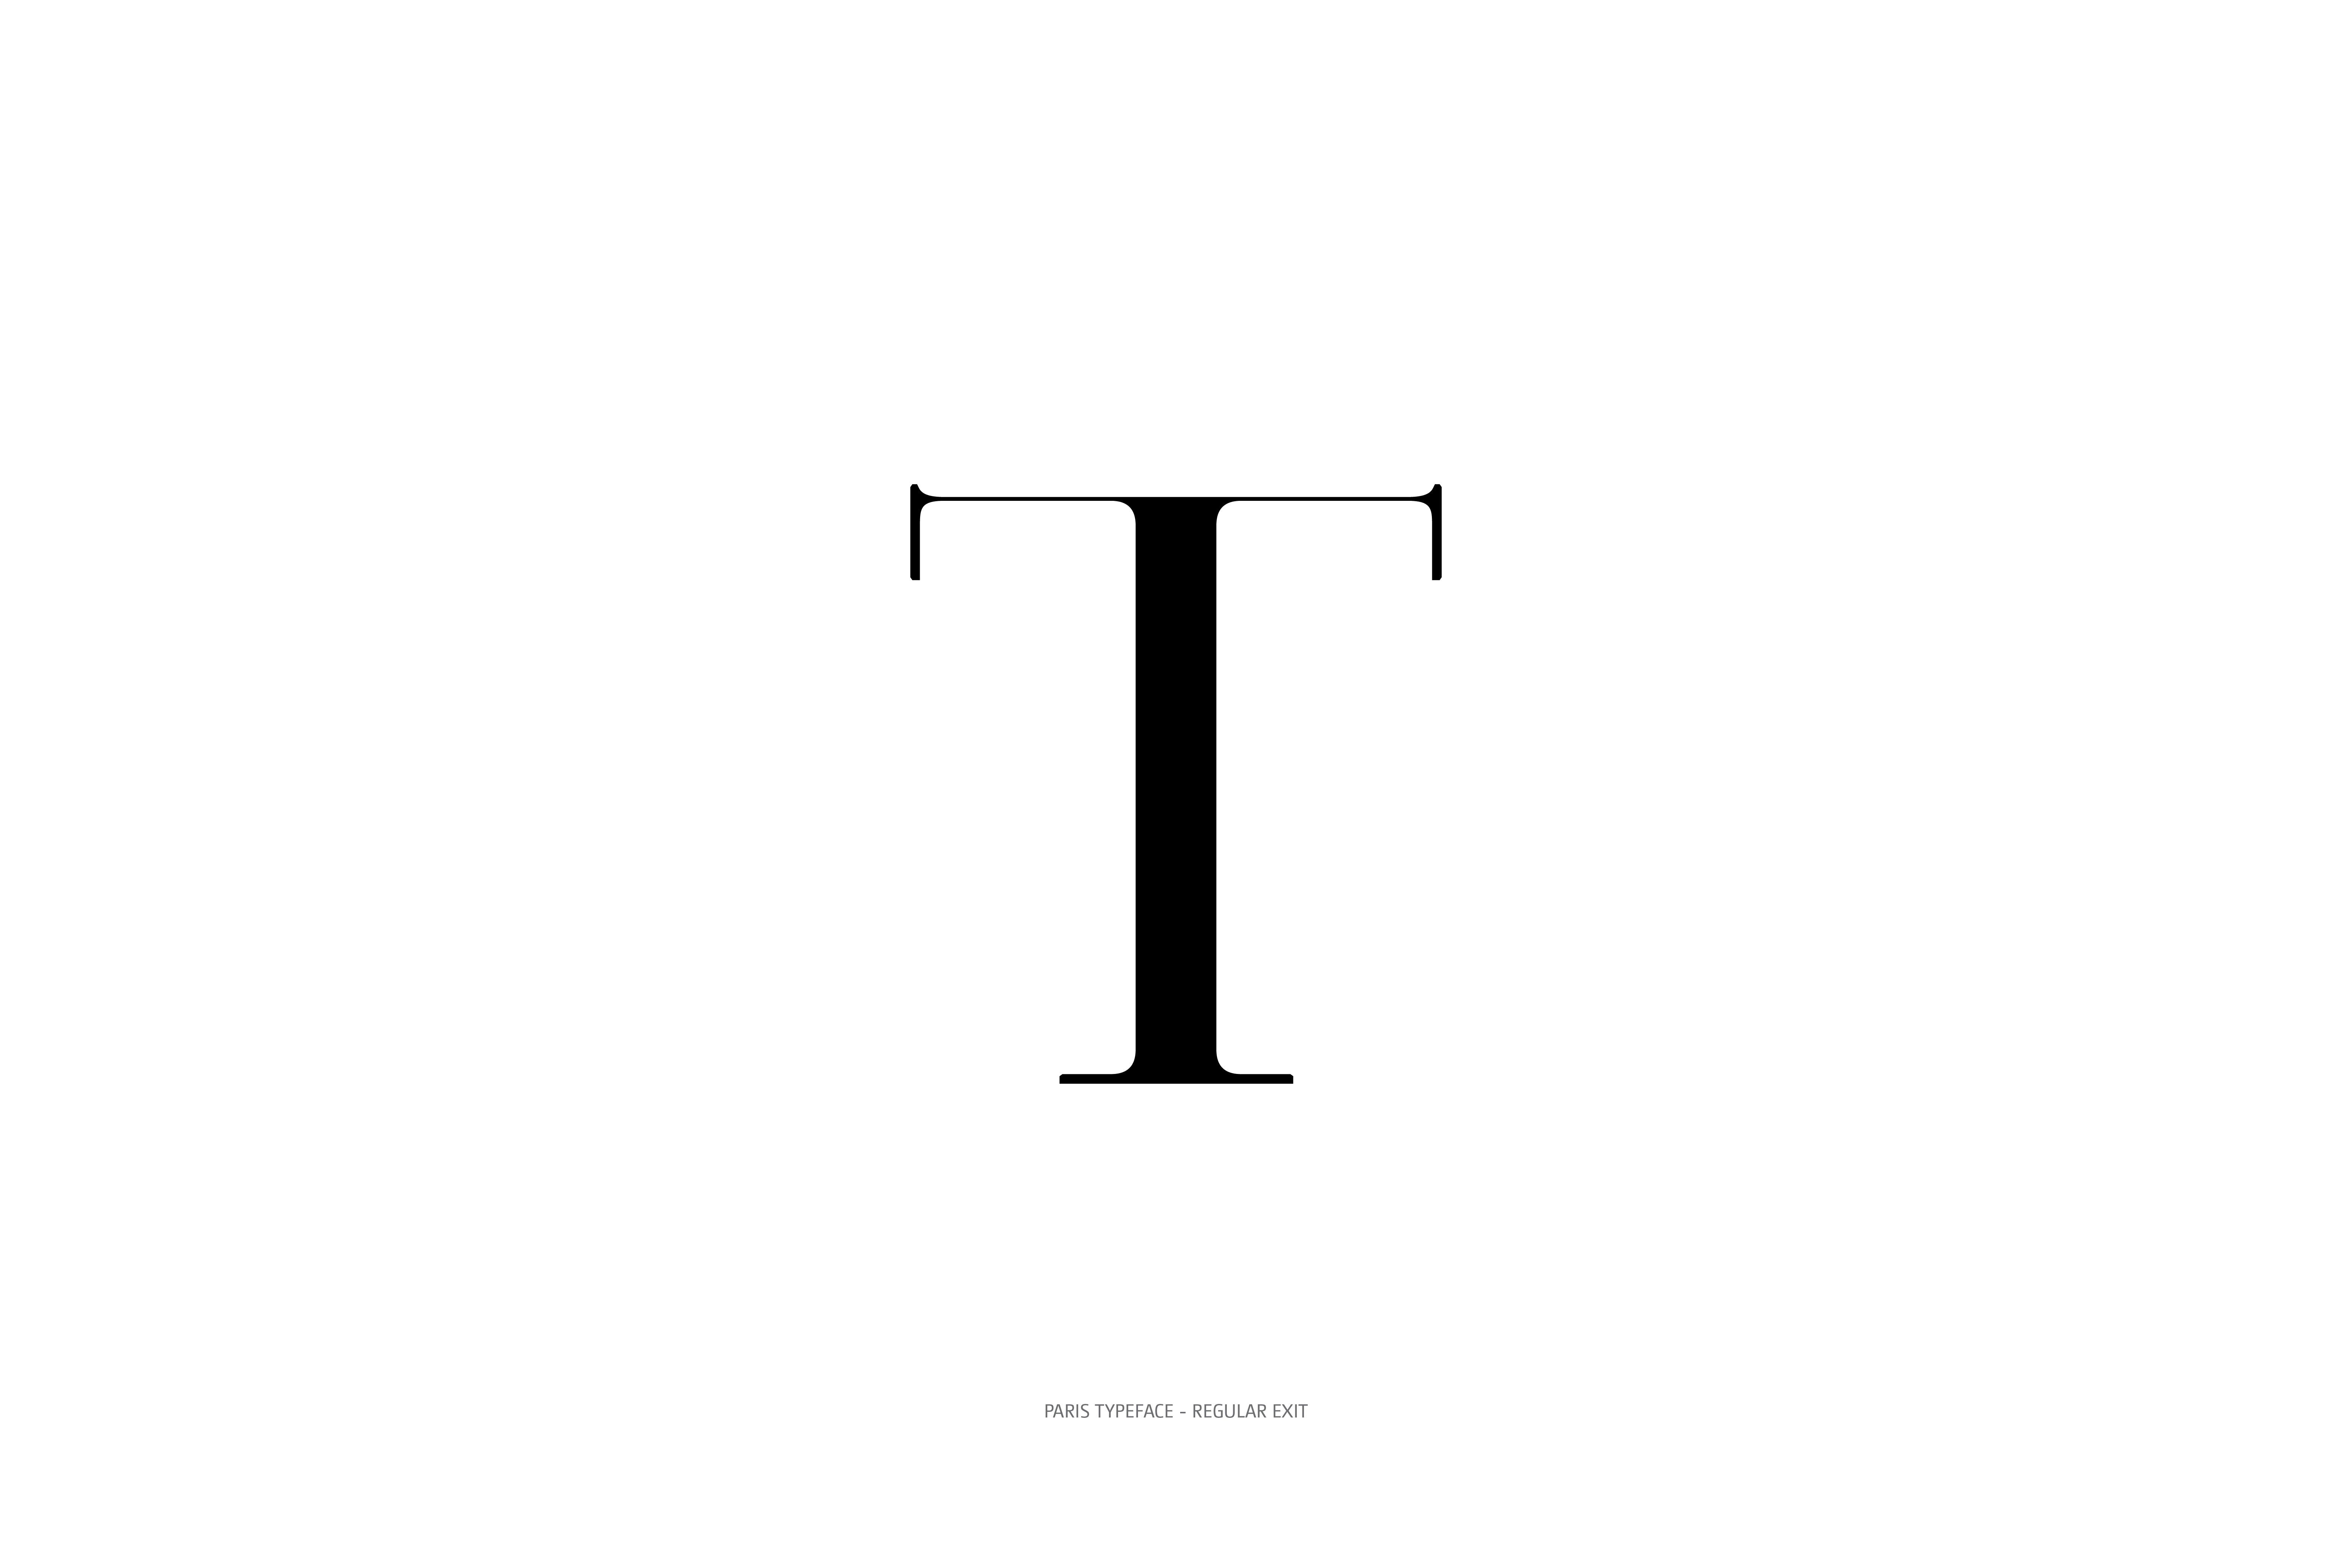 Paris Typeface Regular Exit T